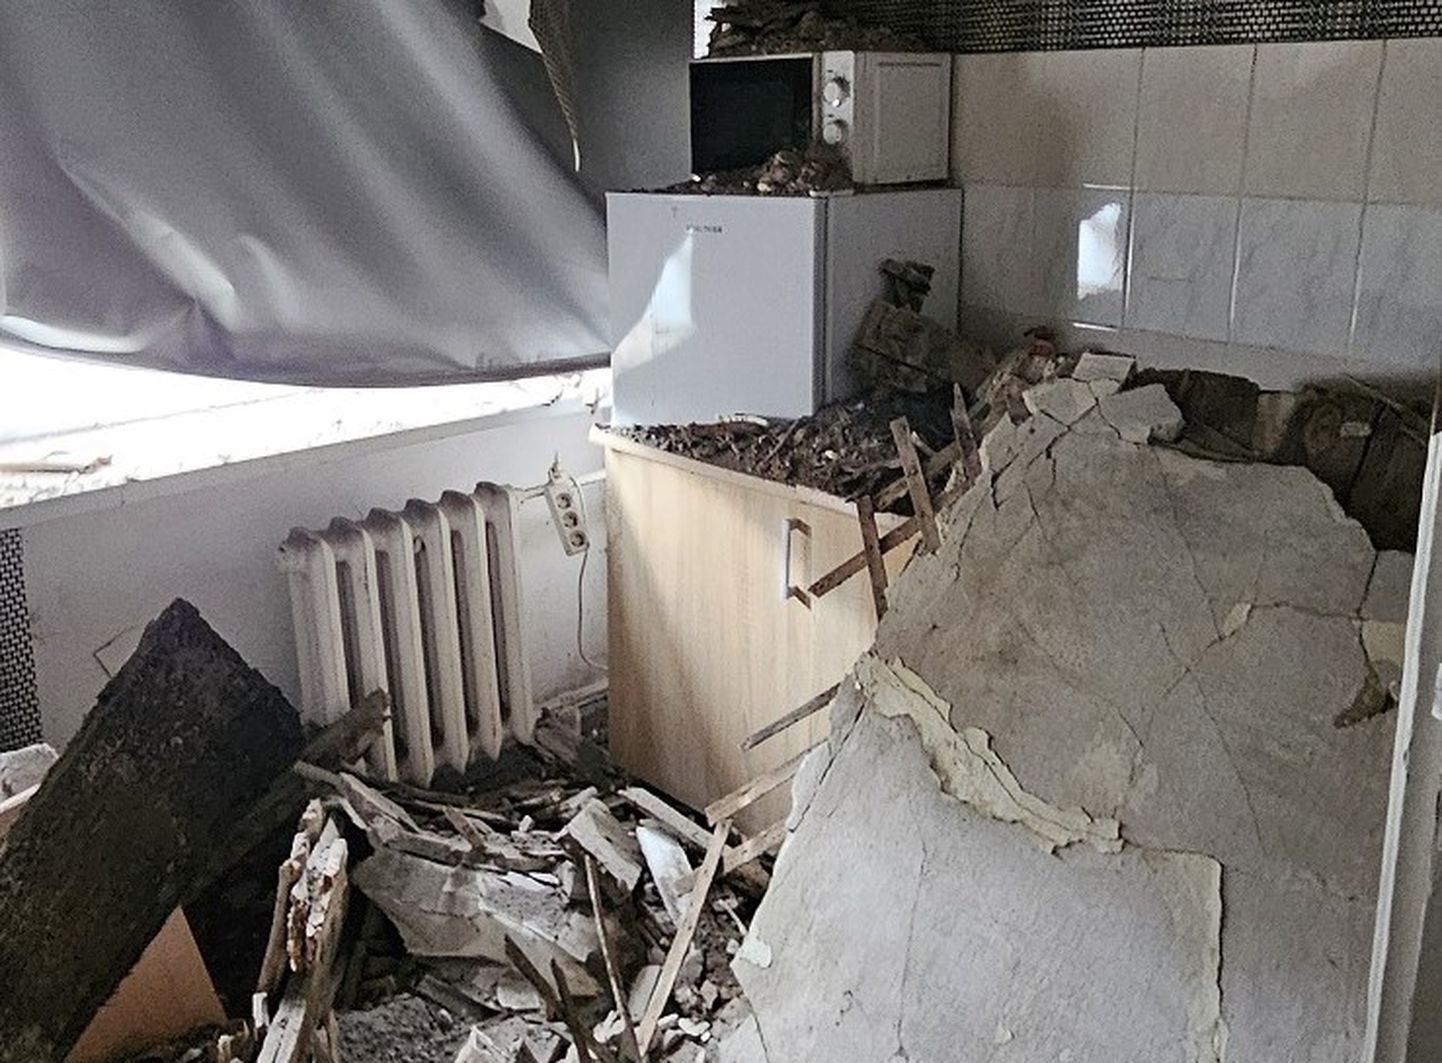 Обрушенный потолок на кухне многоквартирного дома в Кохтла-Ярве.